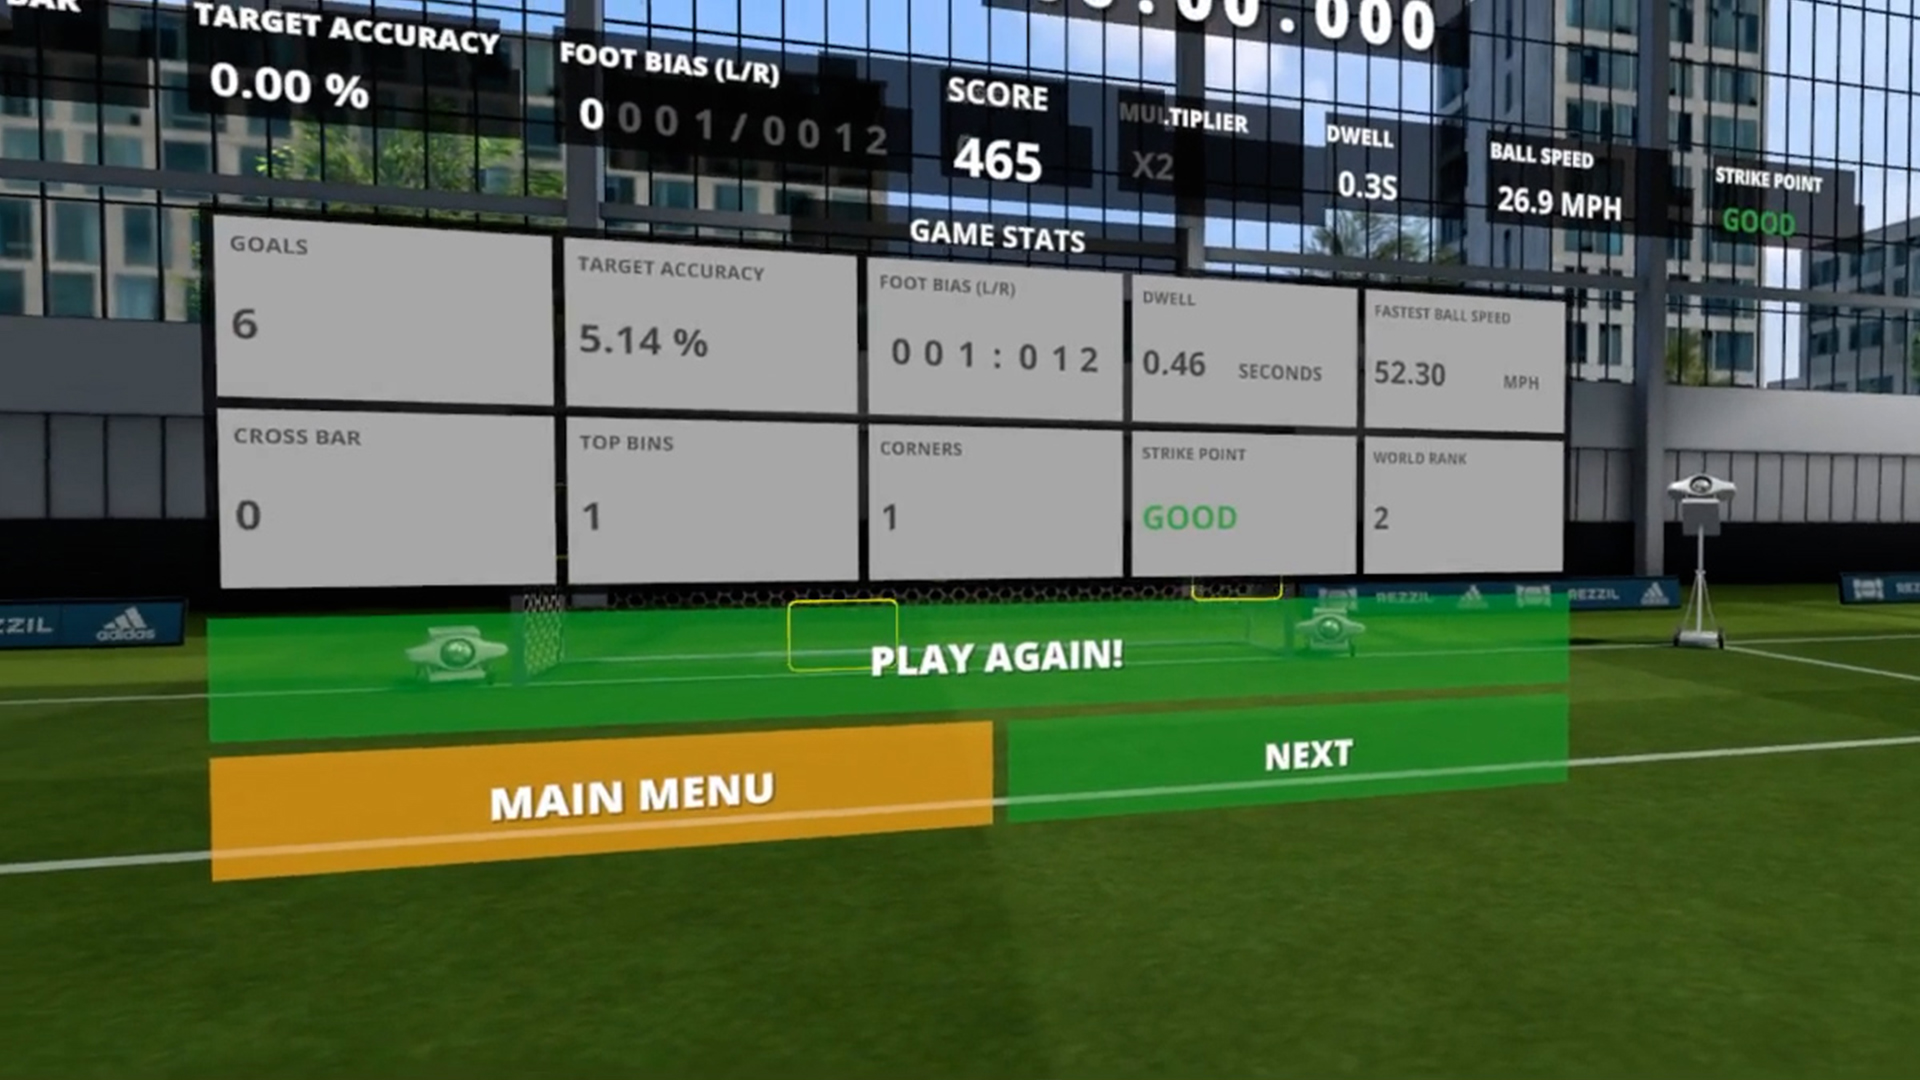 VR przyszłością gier piłkarskich? Rezzil Player 21 dostępny na Viveport